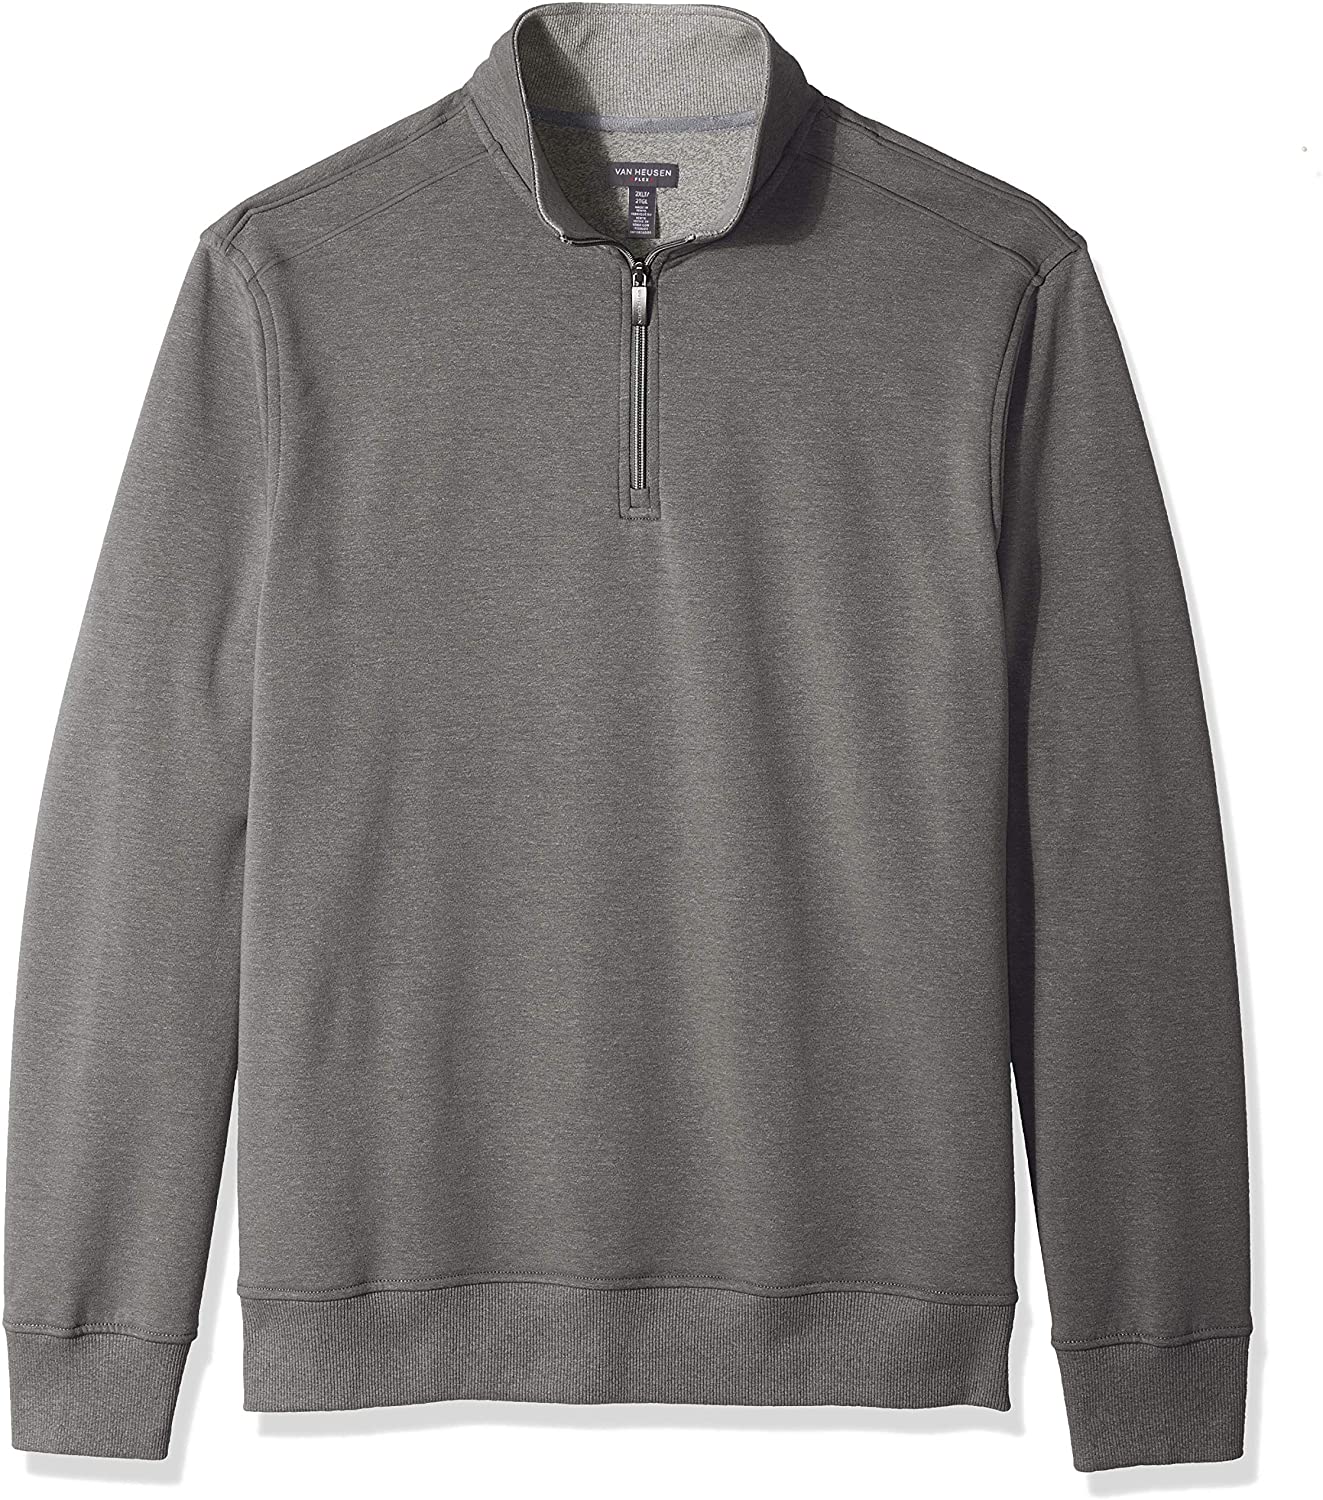 Van Heusen mens Big and Tall Flex Long Sleeve 1/4 Zip Soft Sweater ...